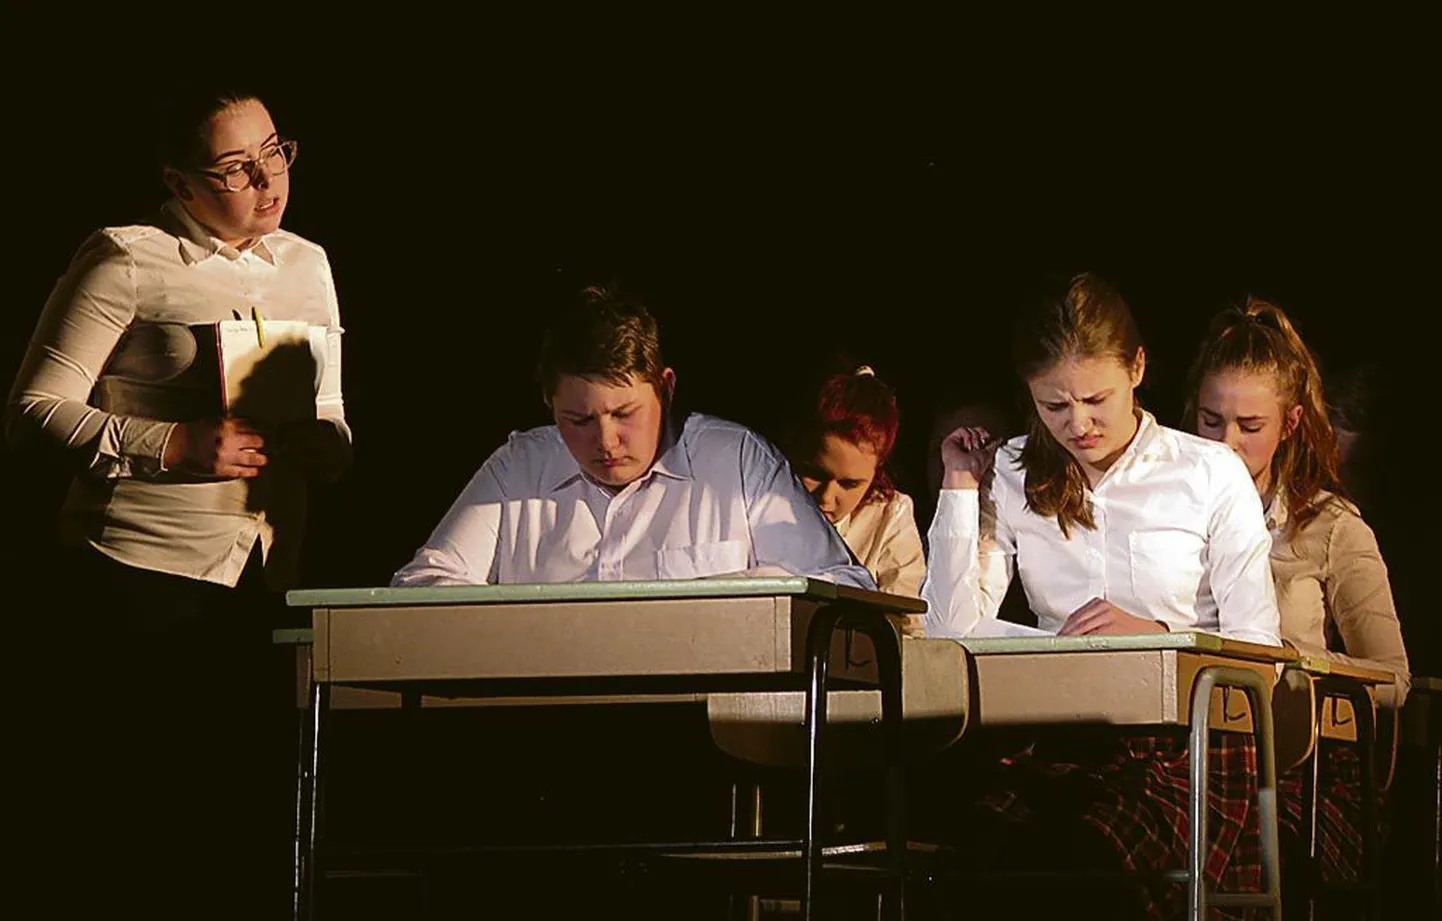 Jõõpre kooli lavastus “Keelepuudutus” esindab aprilli lõpus Pärnumaad kooliteatrite riigifestivalil.